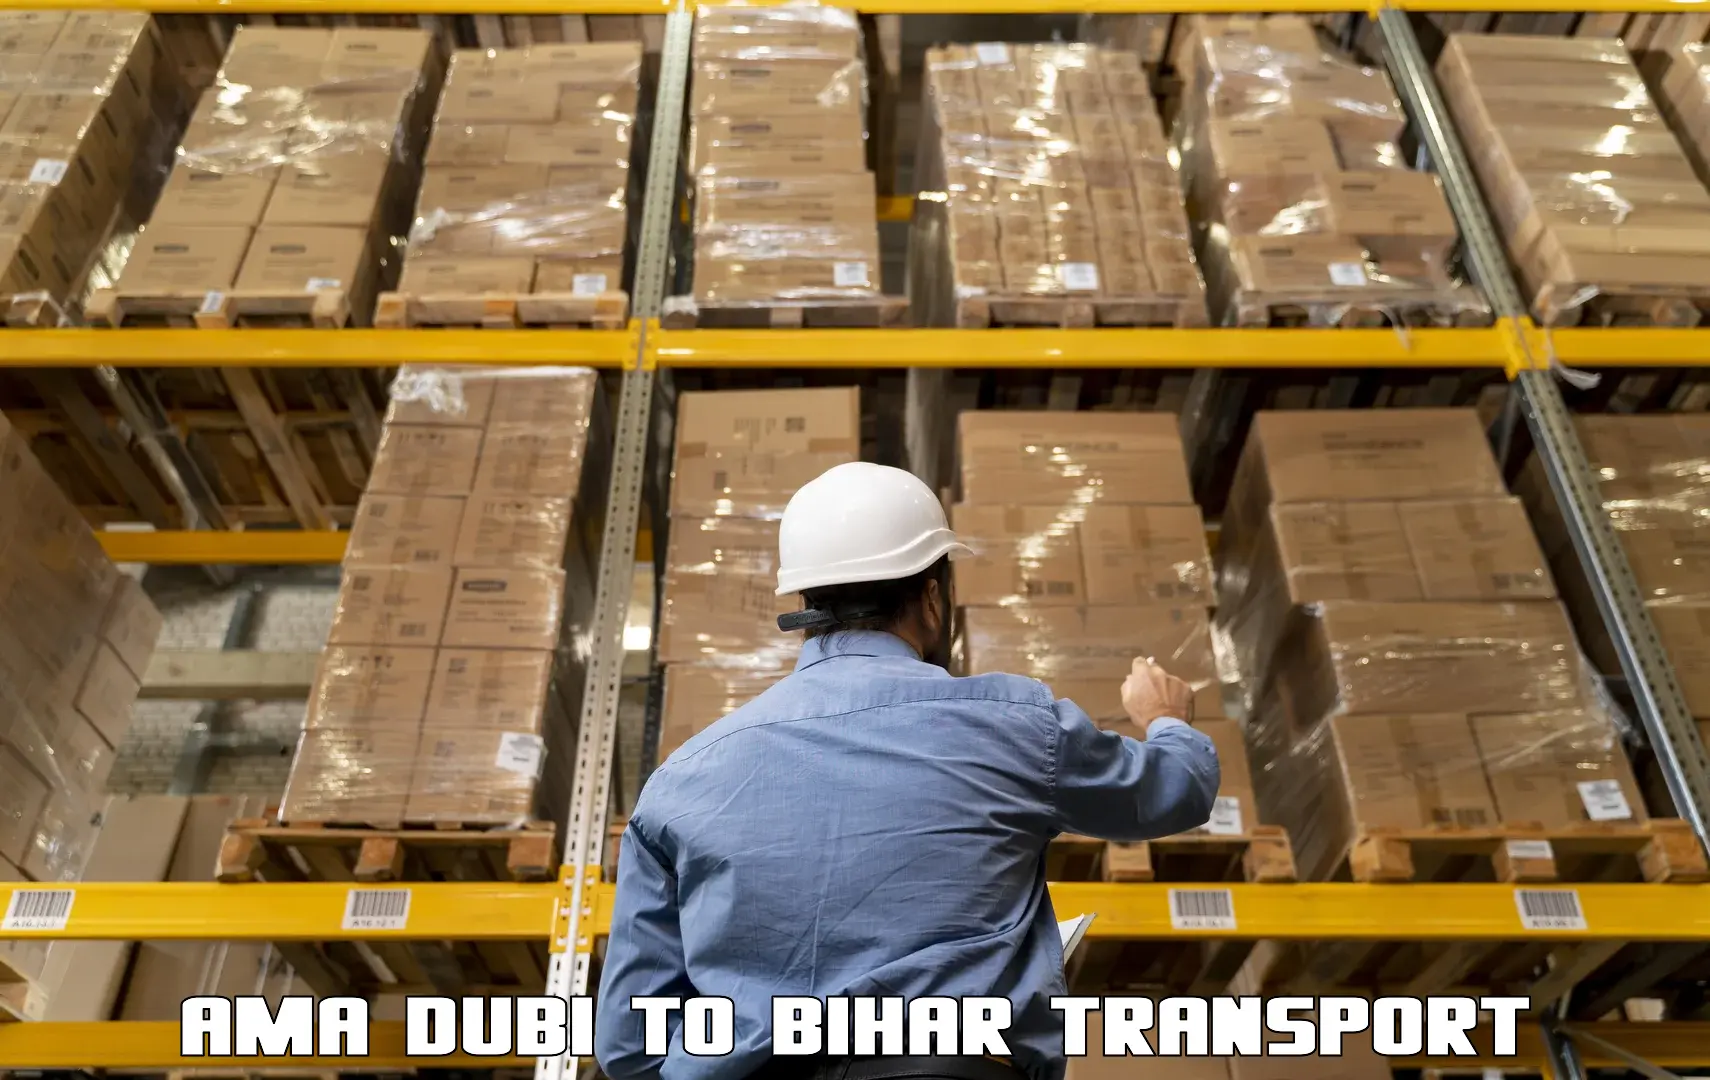 Daily parcel service transport Ama Dubi to Daudnagar